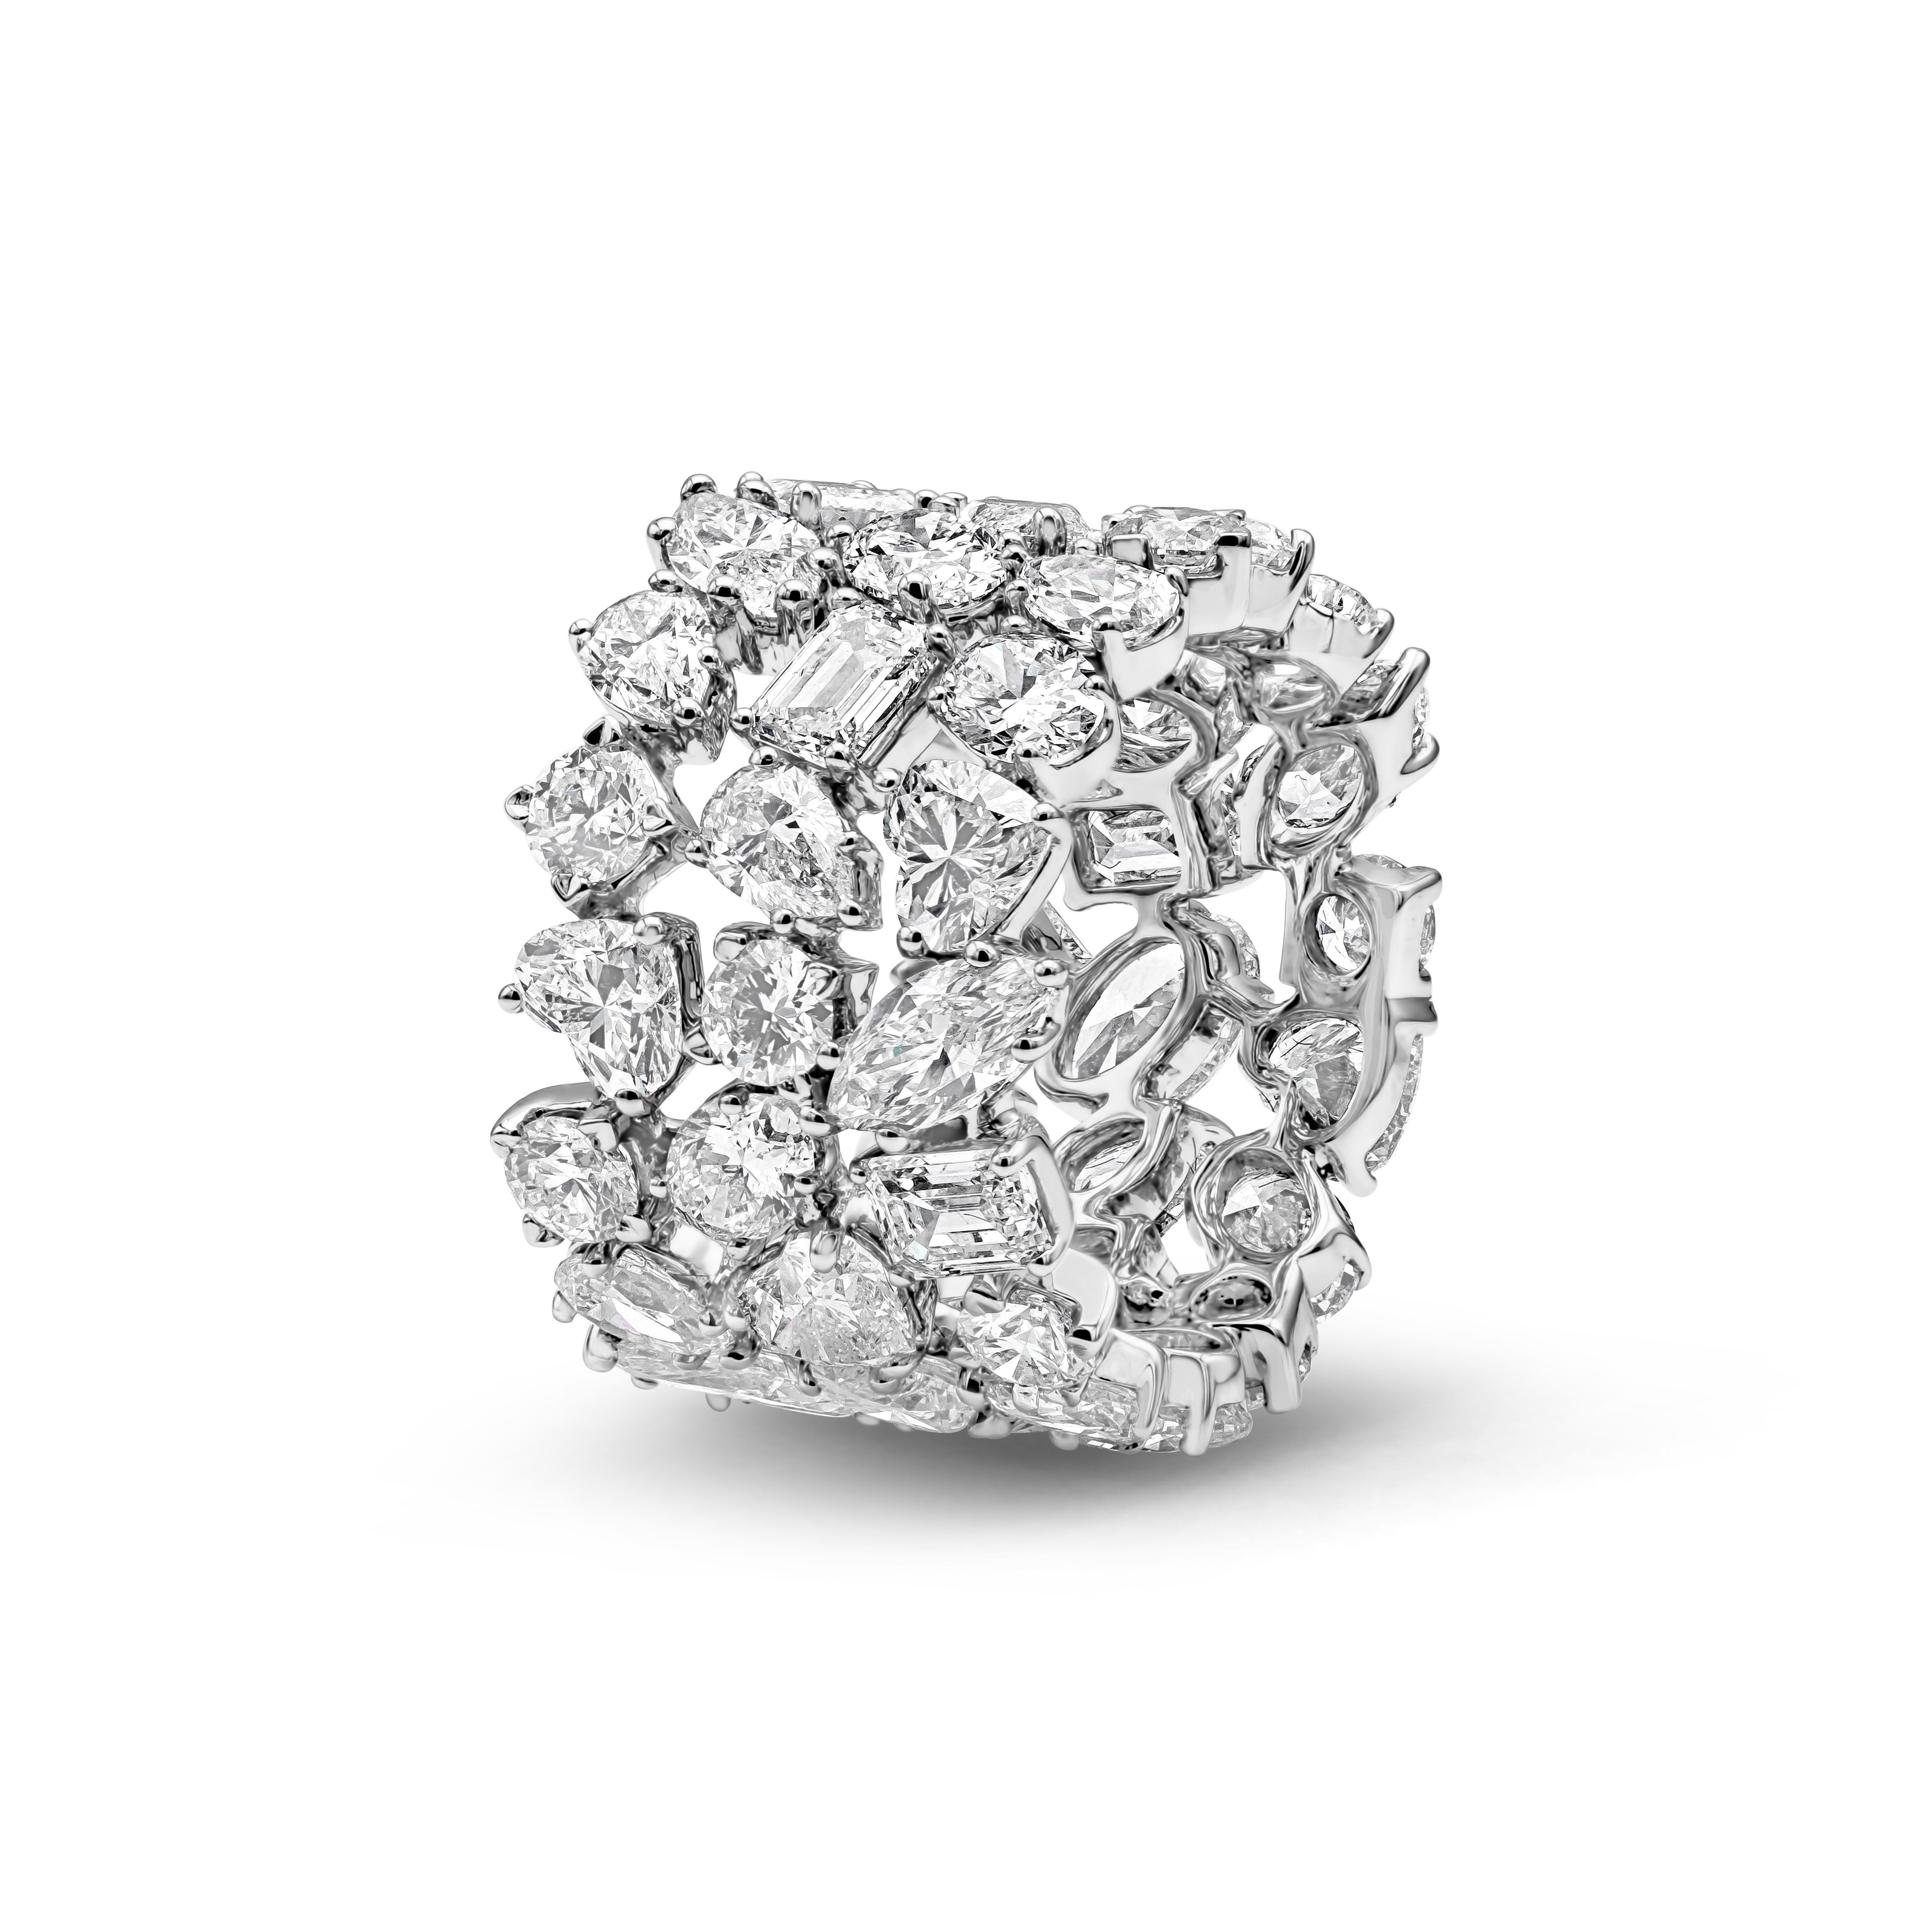 Dieses einzigartige und gut verarbeitete Schmuckstück zeigt drei Reihen von gemischten Diamanten im Phantasieschliff, die in einem durchbrochenen, schwebenden Diamantdesign gefasst sind, das aus Marquise, Oval, Brillant, Herzform und Smaragd besteht